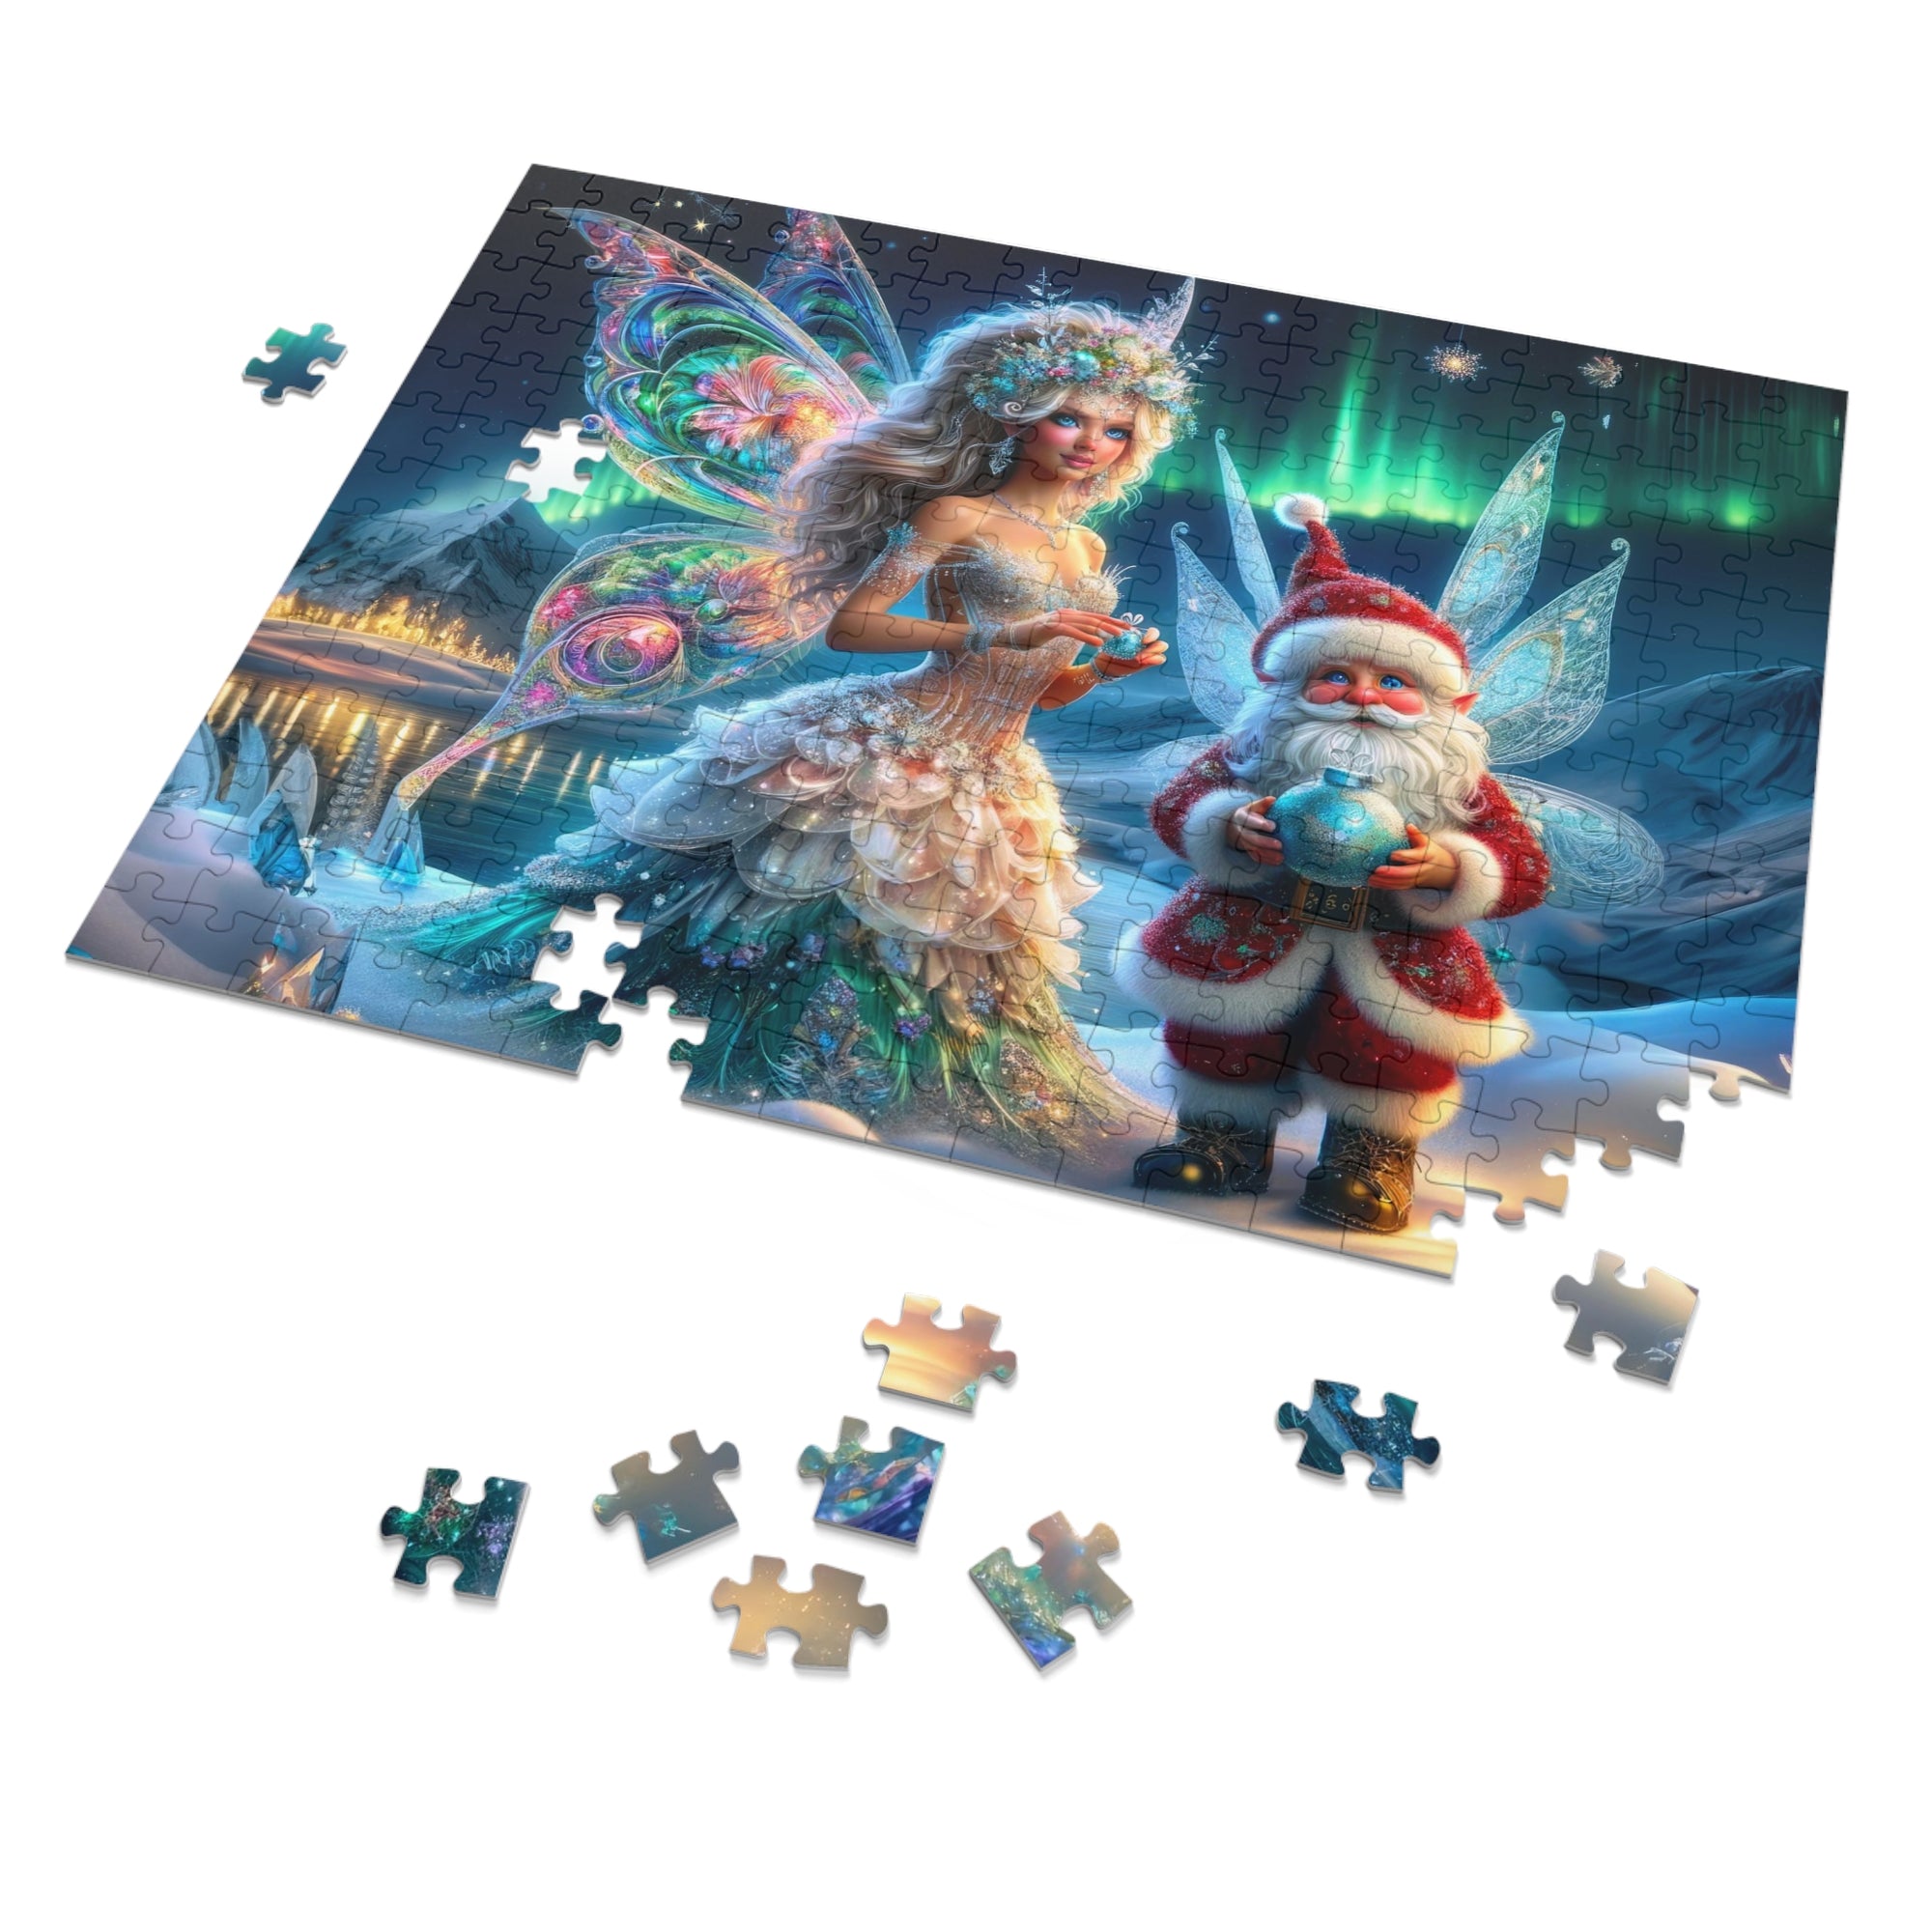 A Fairytale Christmas Jigsaw Puzzle